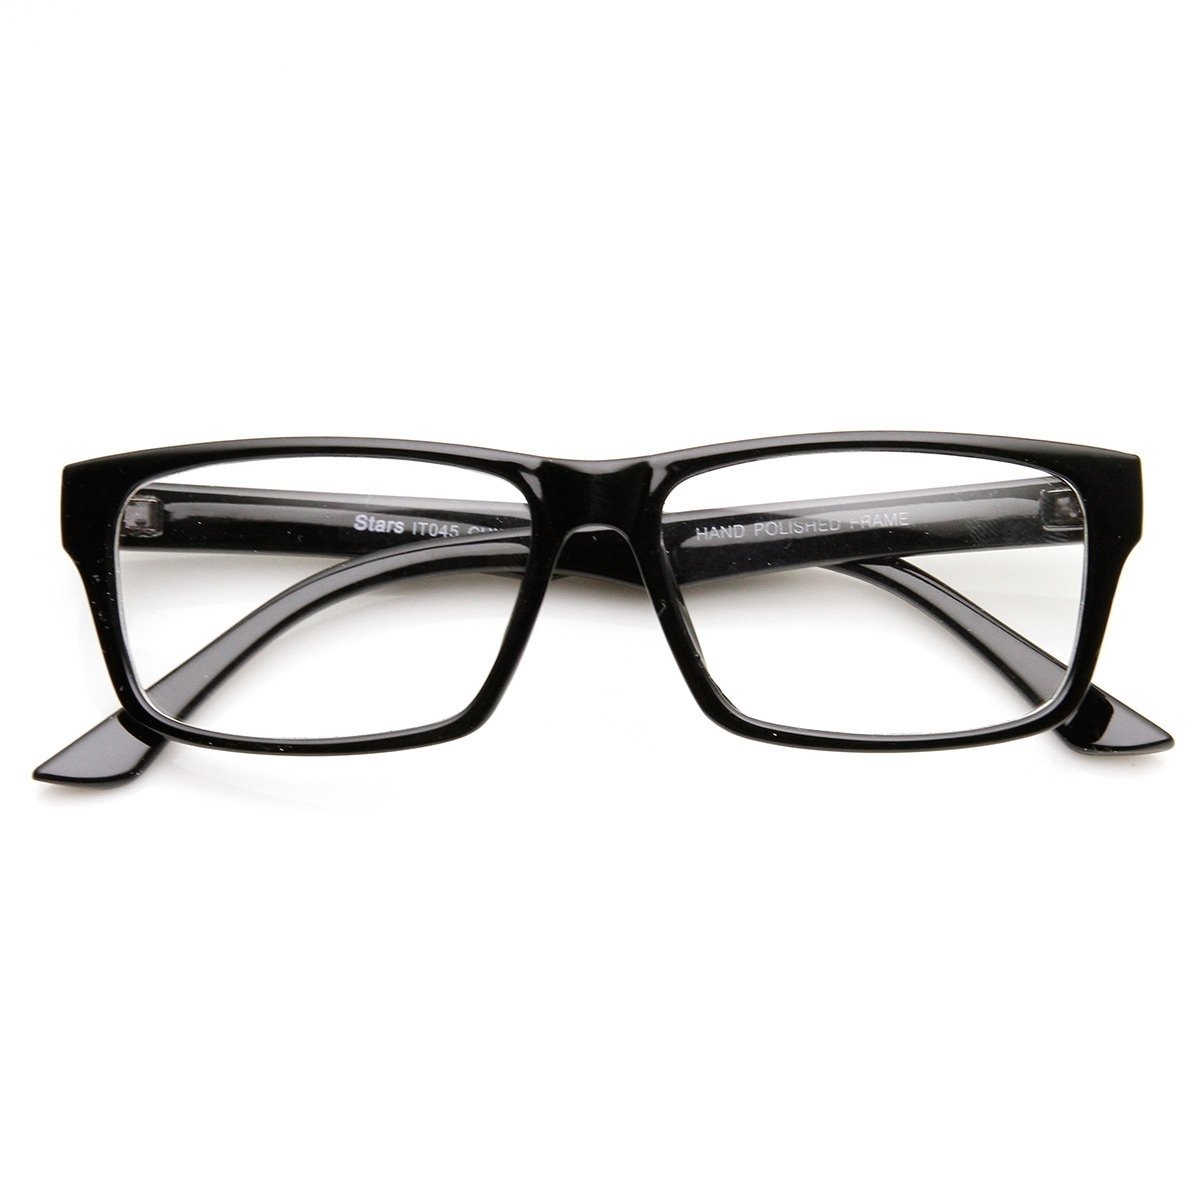 Modern Fashion Basic Mod Rectangular Clear Lens Glasses - Tortoise